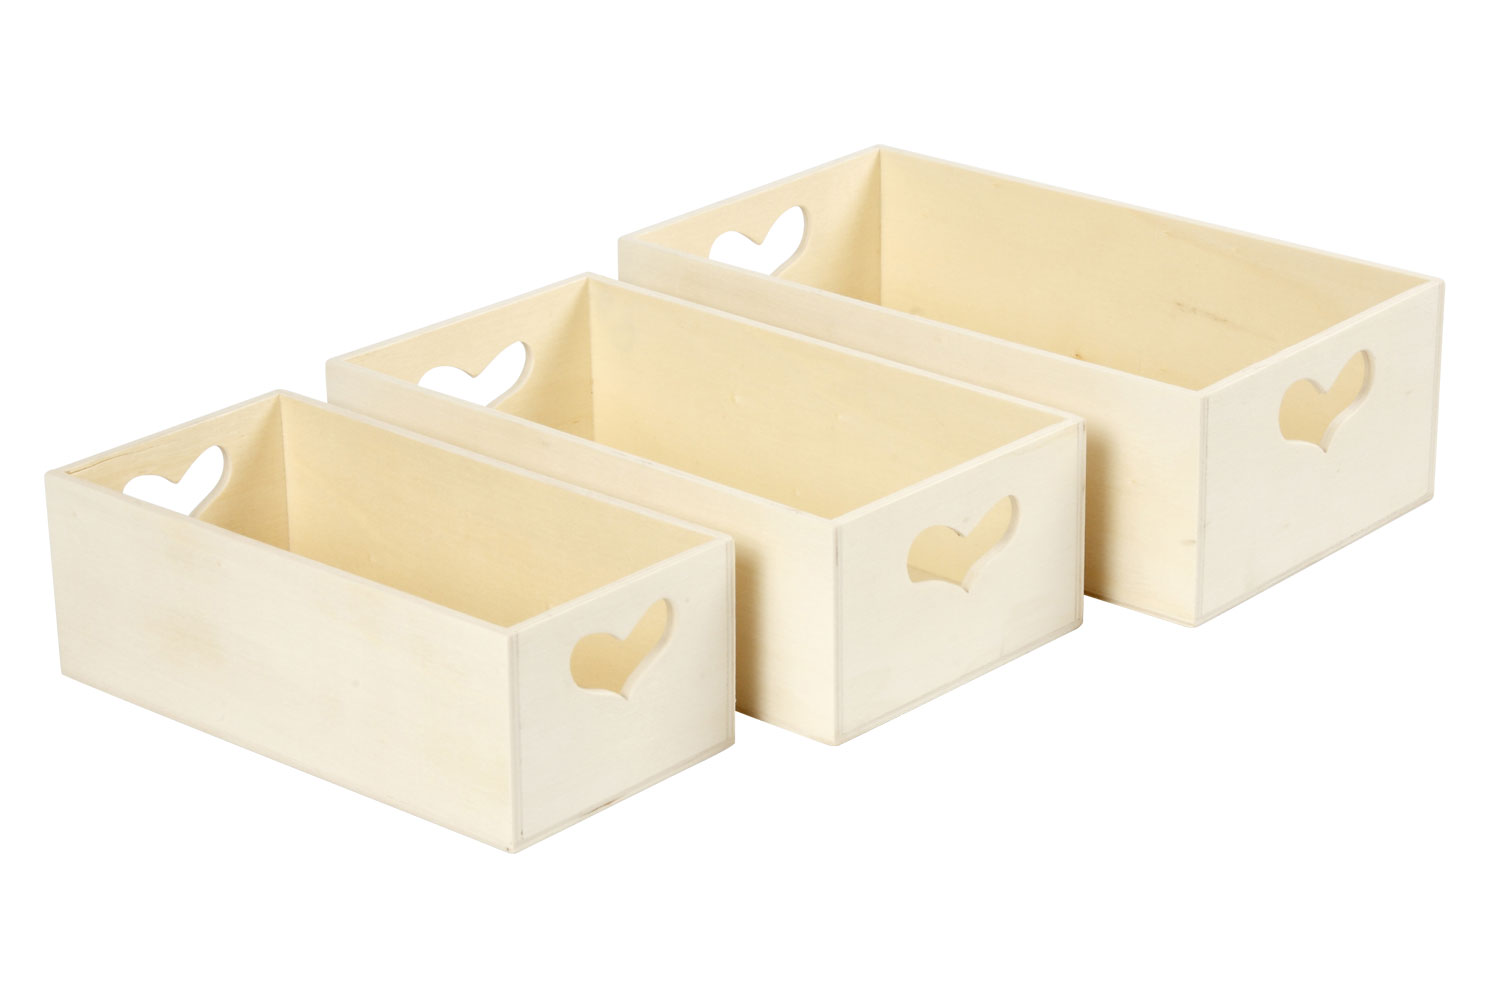 Creative Deco Caisse Bois Rangement Blanc, 40 x 30 x 13 cm (+/- 1cm), Boîte de Rangement Bois, Boite Rangement Cuisine, Casier de Rangement